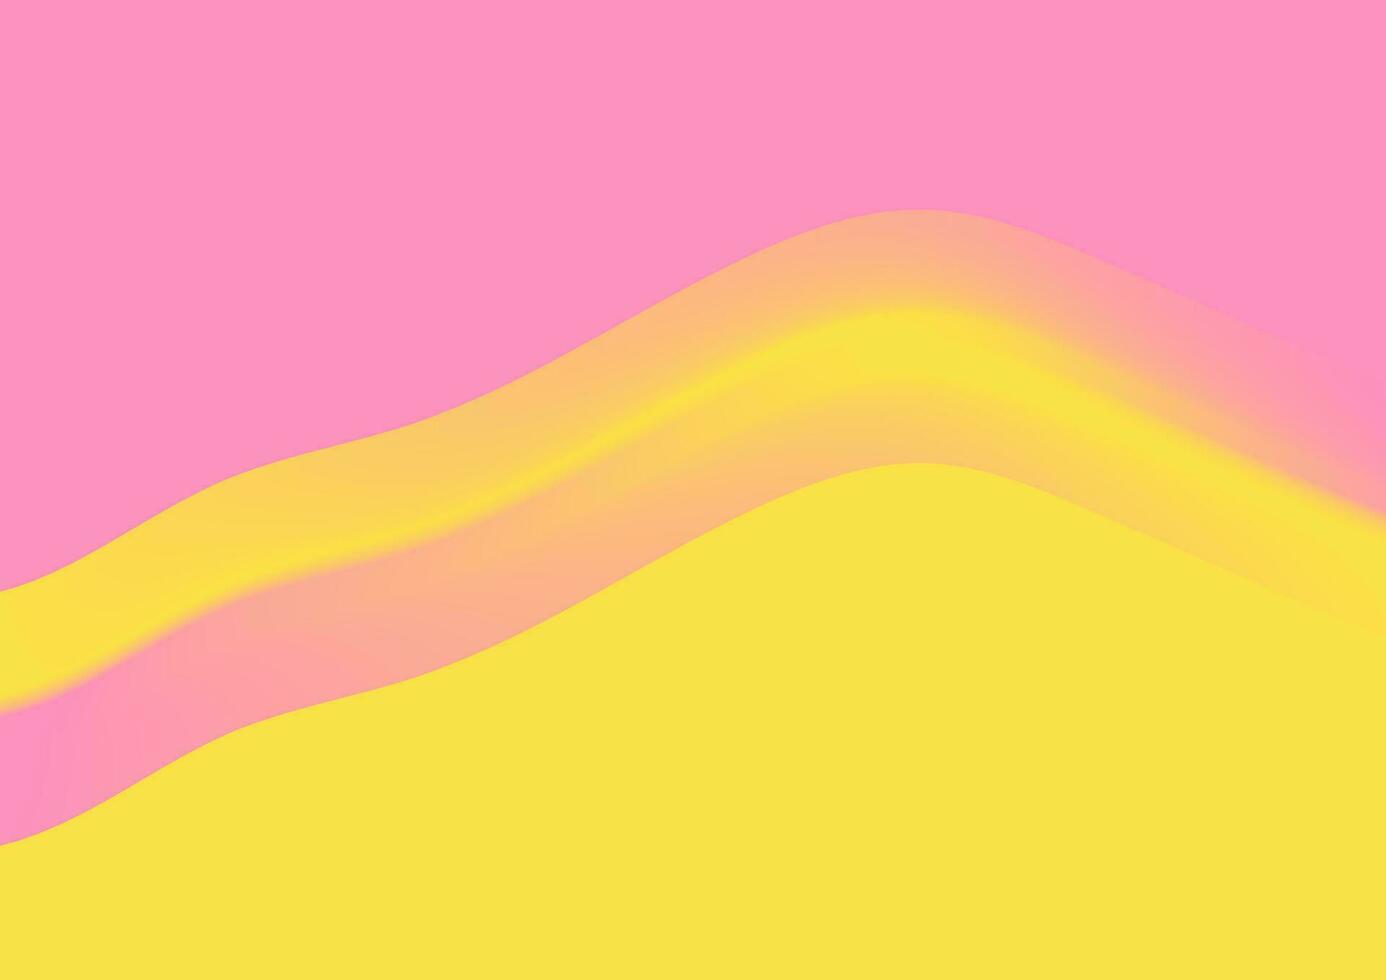 hoch Kontrast Gelb und Rosa Pastell- abstrakt minimal Hintergrund vektor